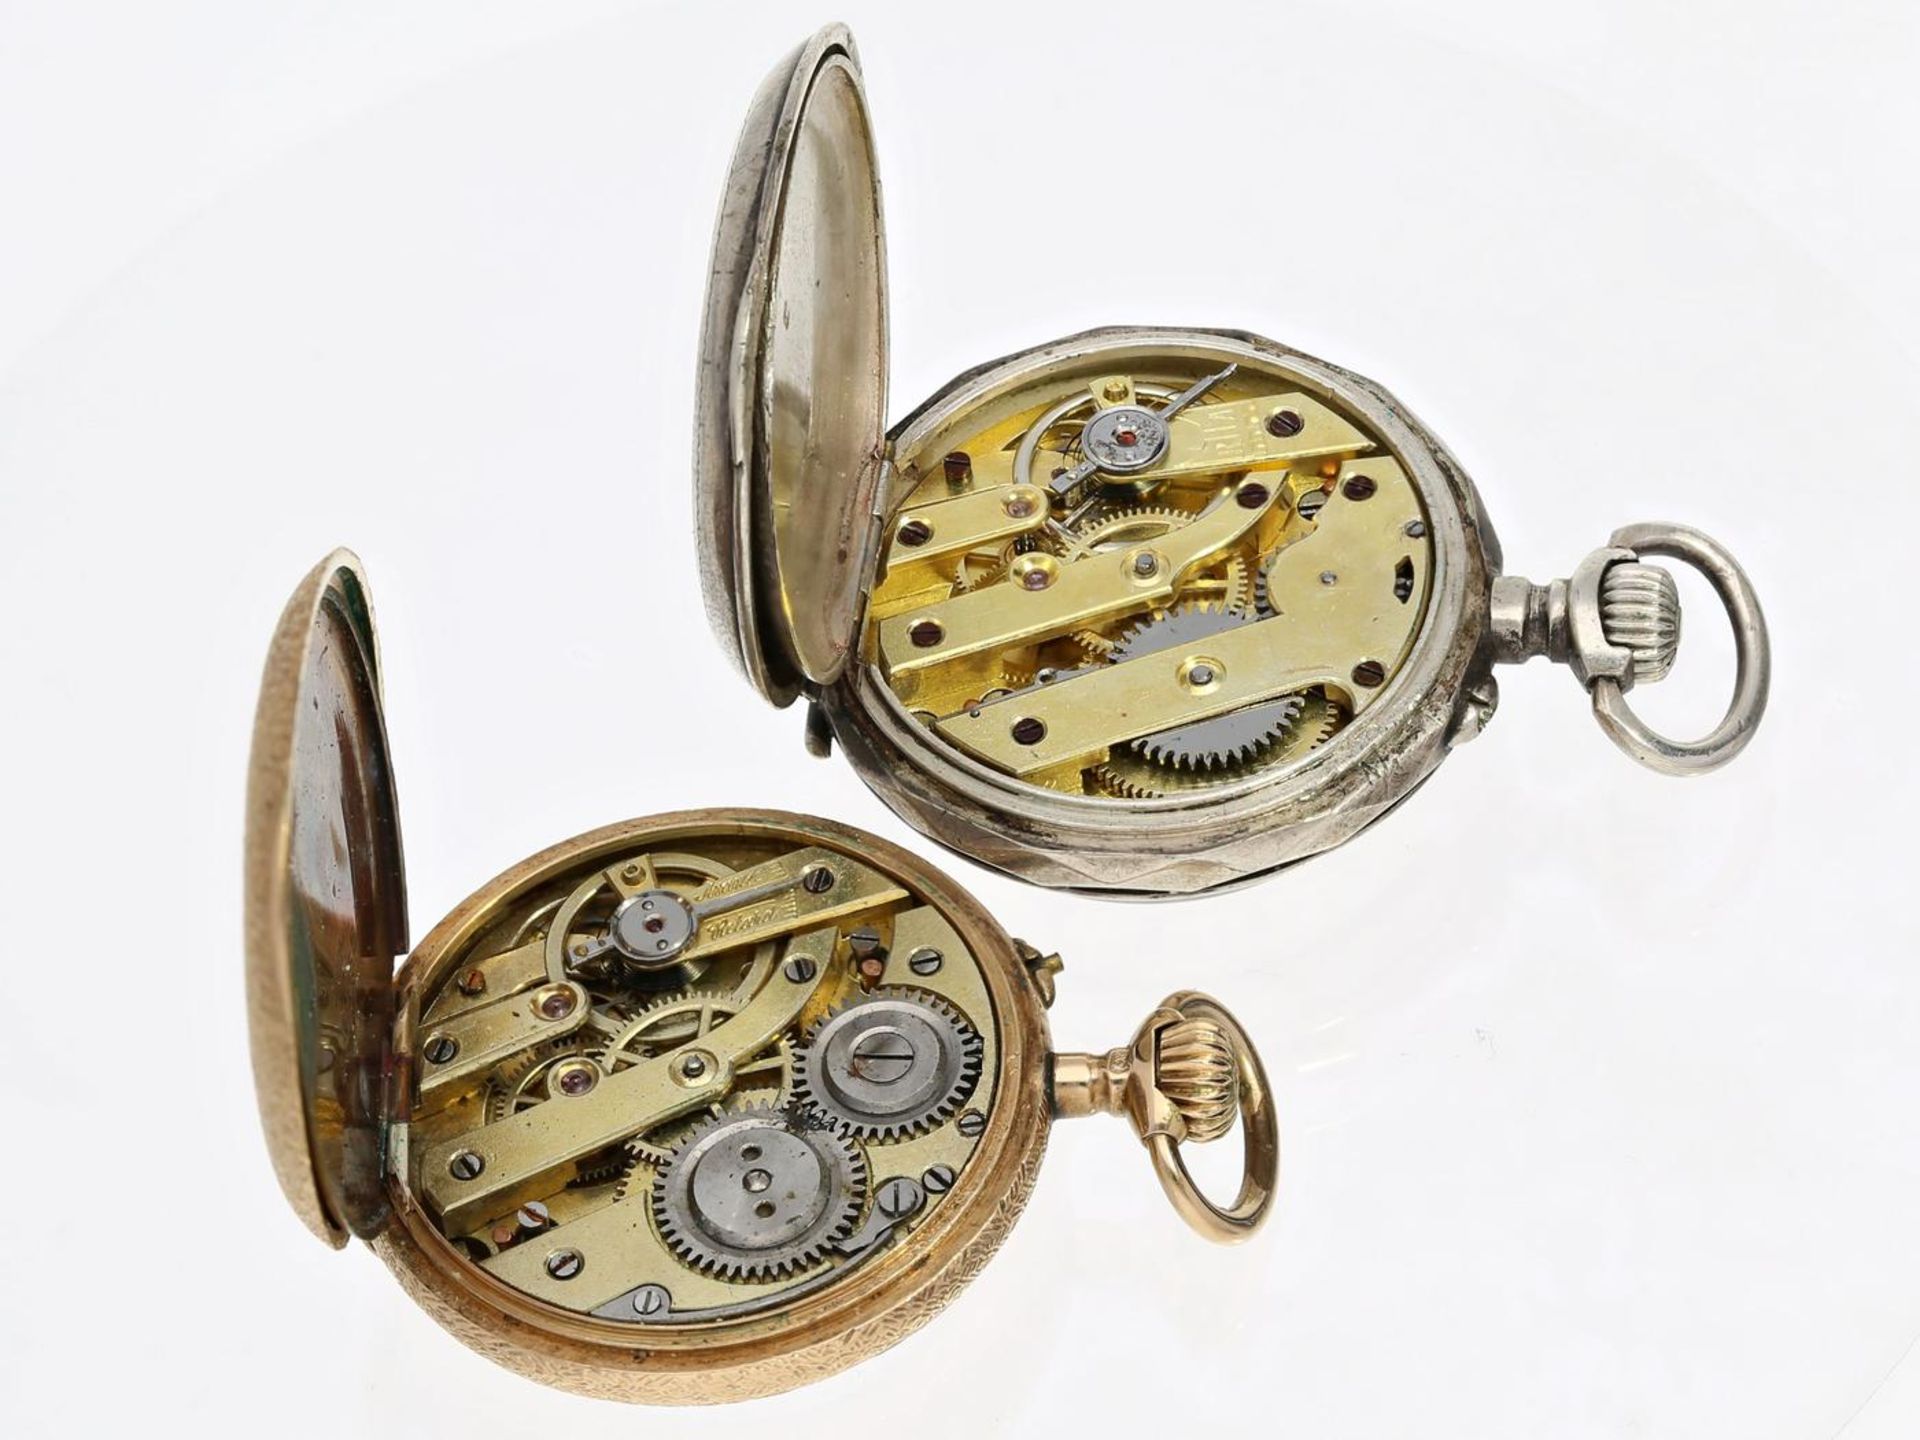 Taschenuhr: Konvolut von 2 Damenuhren um 1900, Gold/Silber 1. ca. Ø29mm, ca. 19,5g, dekoratives, - Bild 2 aus 3